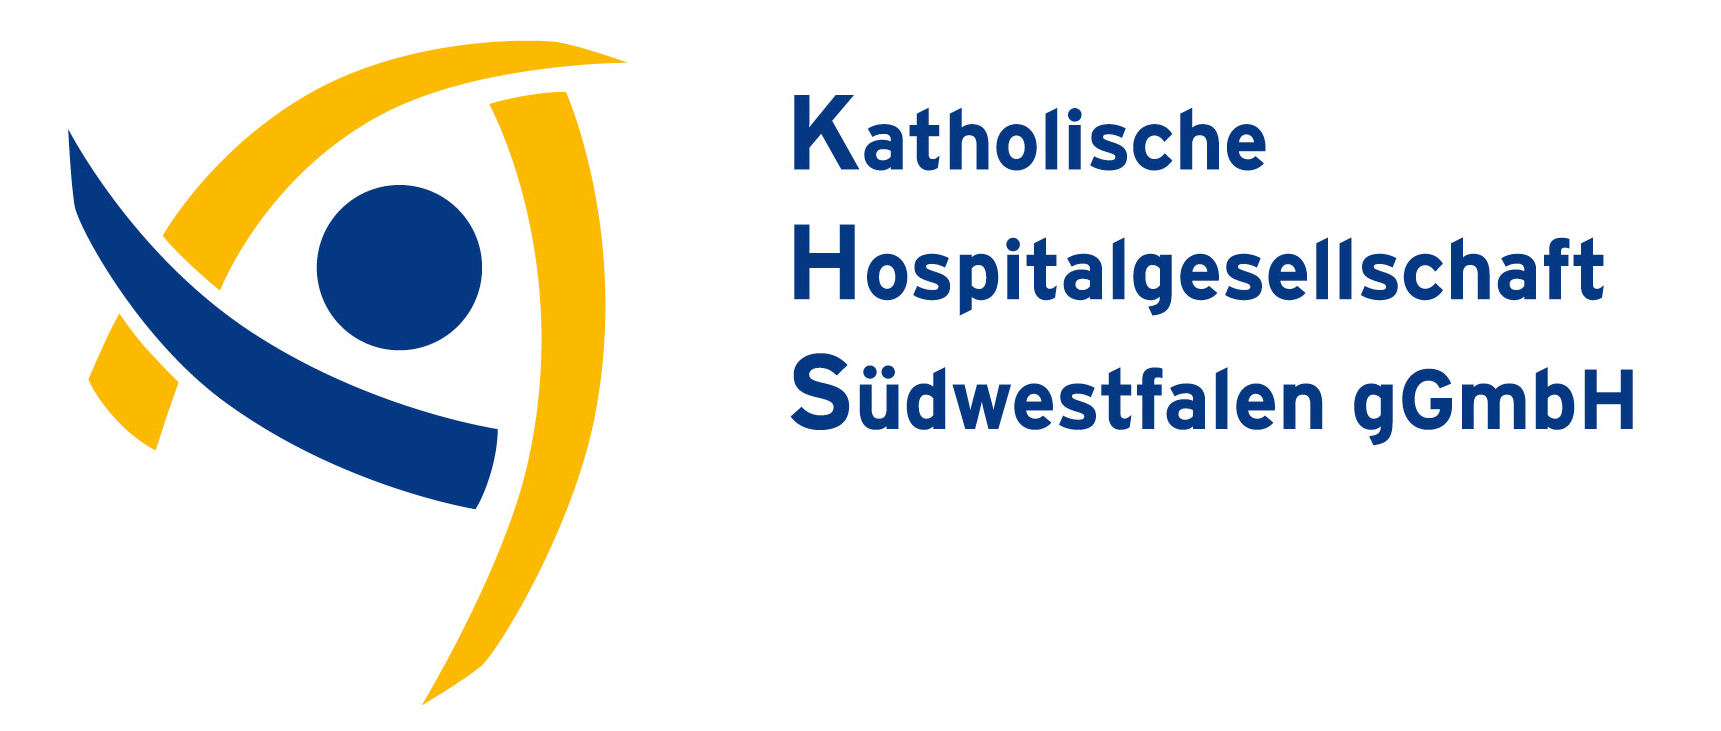 KHS - Kath. Hospitalgesellschaft Südwestfalen gGmbH